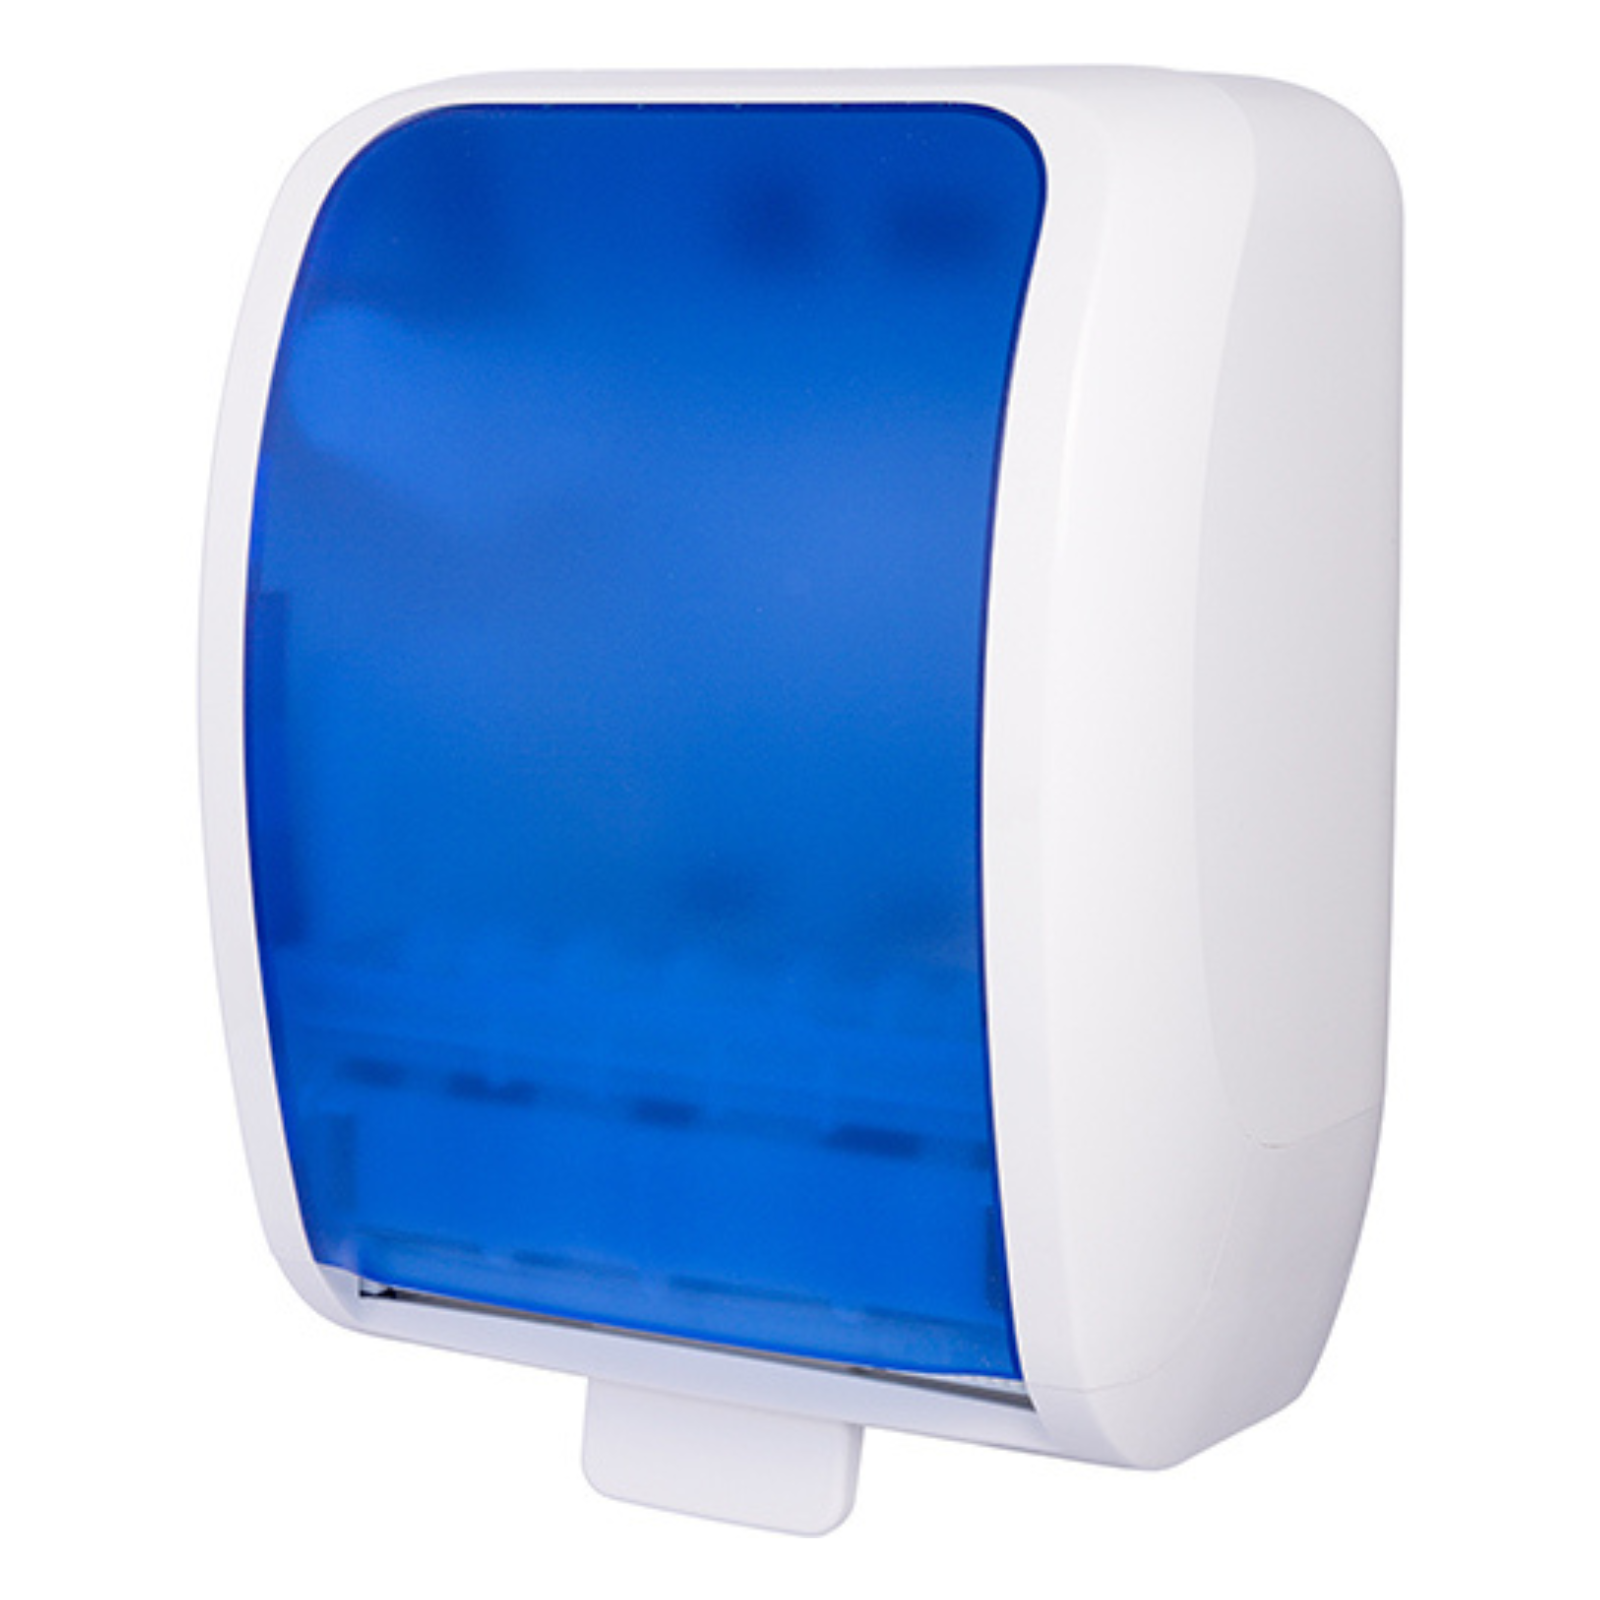 Pura - Hand Towel Roll Dispenser - White/Blue